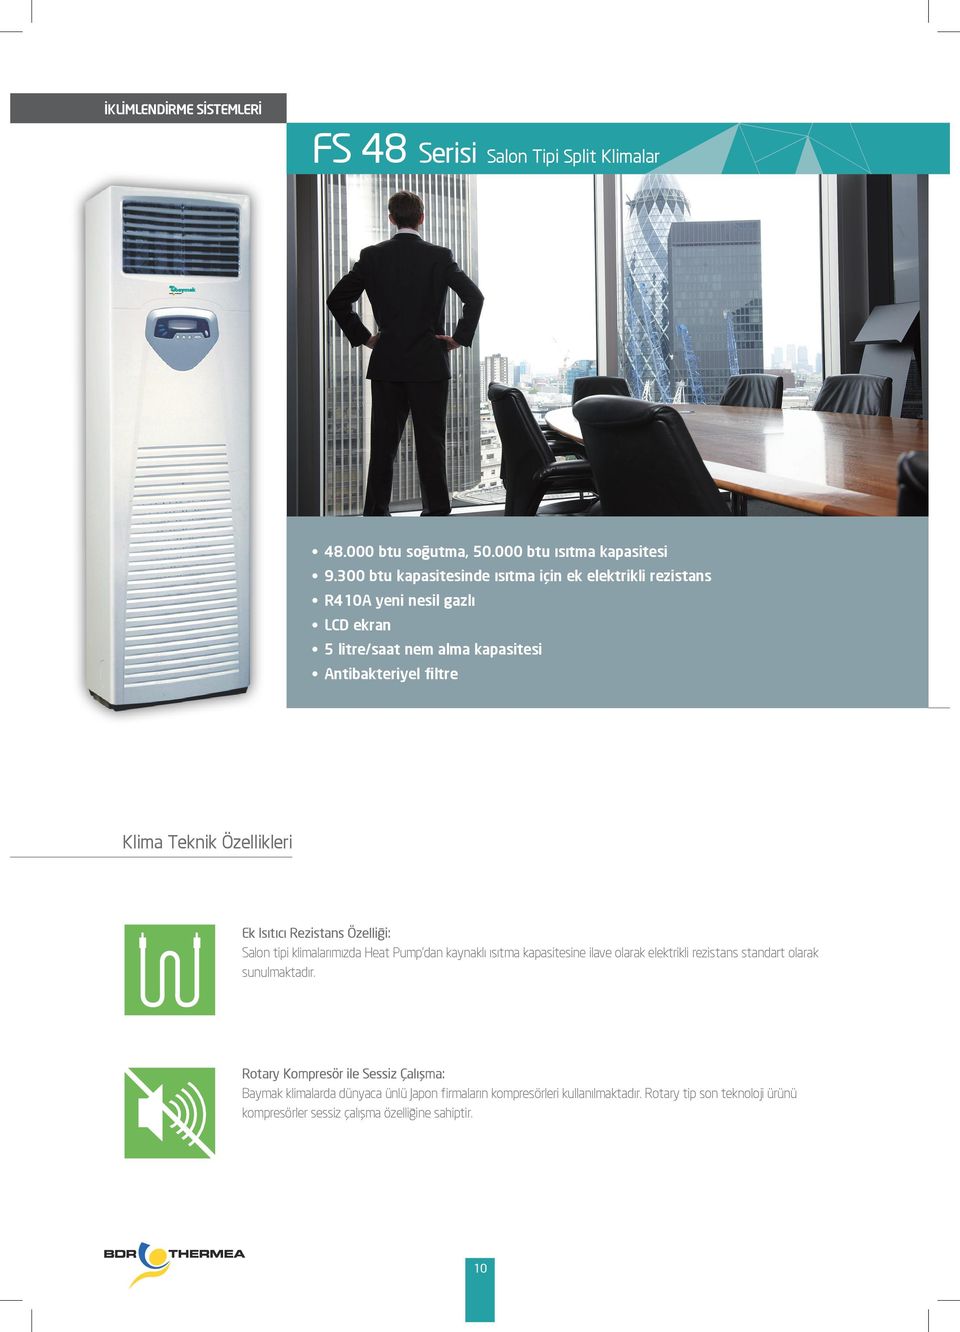 Özellikleri Ek Isıtıcı Rezistans Özelliği: Salon tipi klimalarımızda Heat Pump dan kaynaklı ısıtma kapasitesine ilave olarak elektrikli rezistans standart olarak